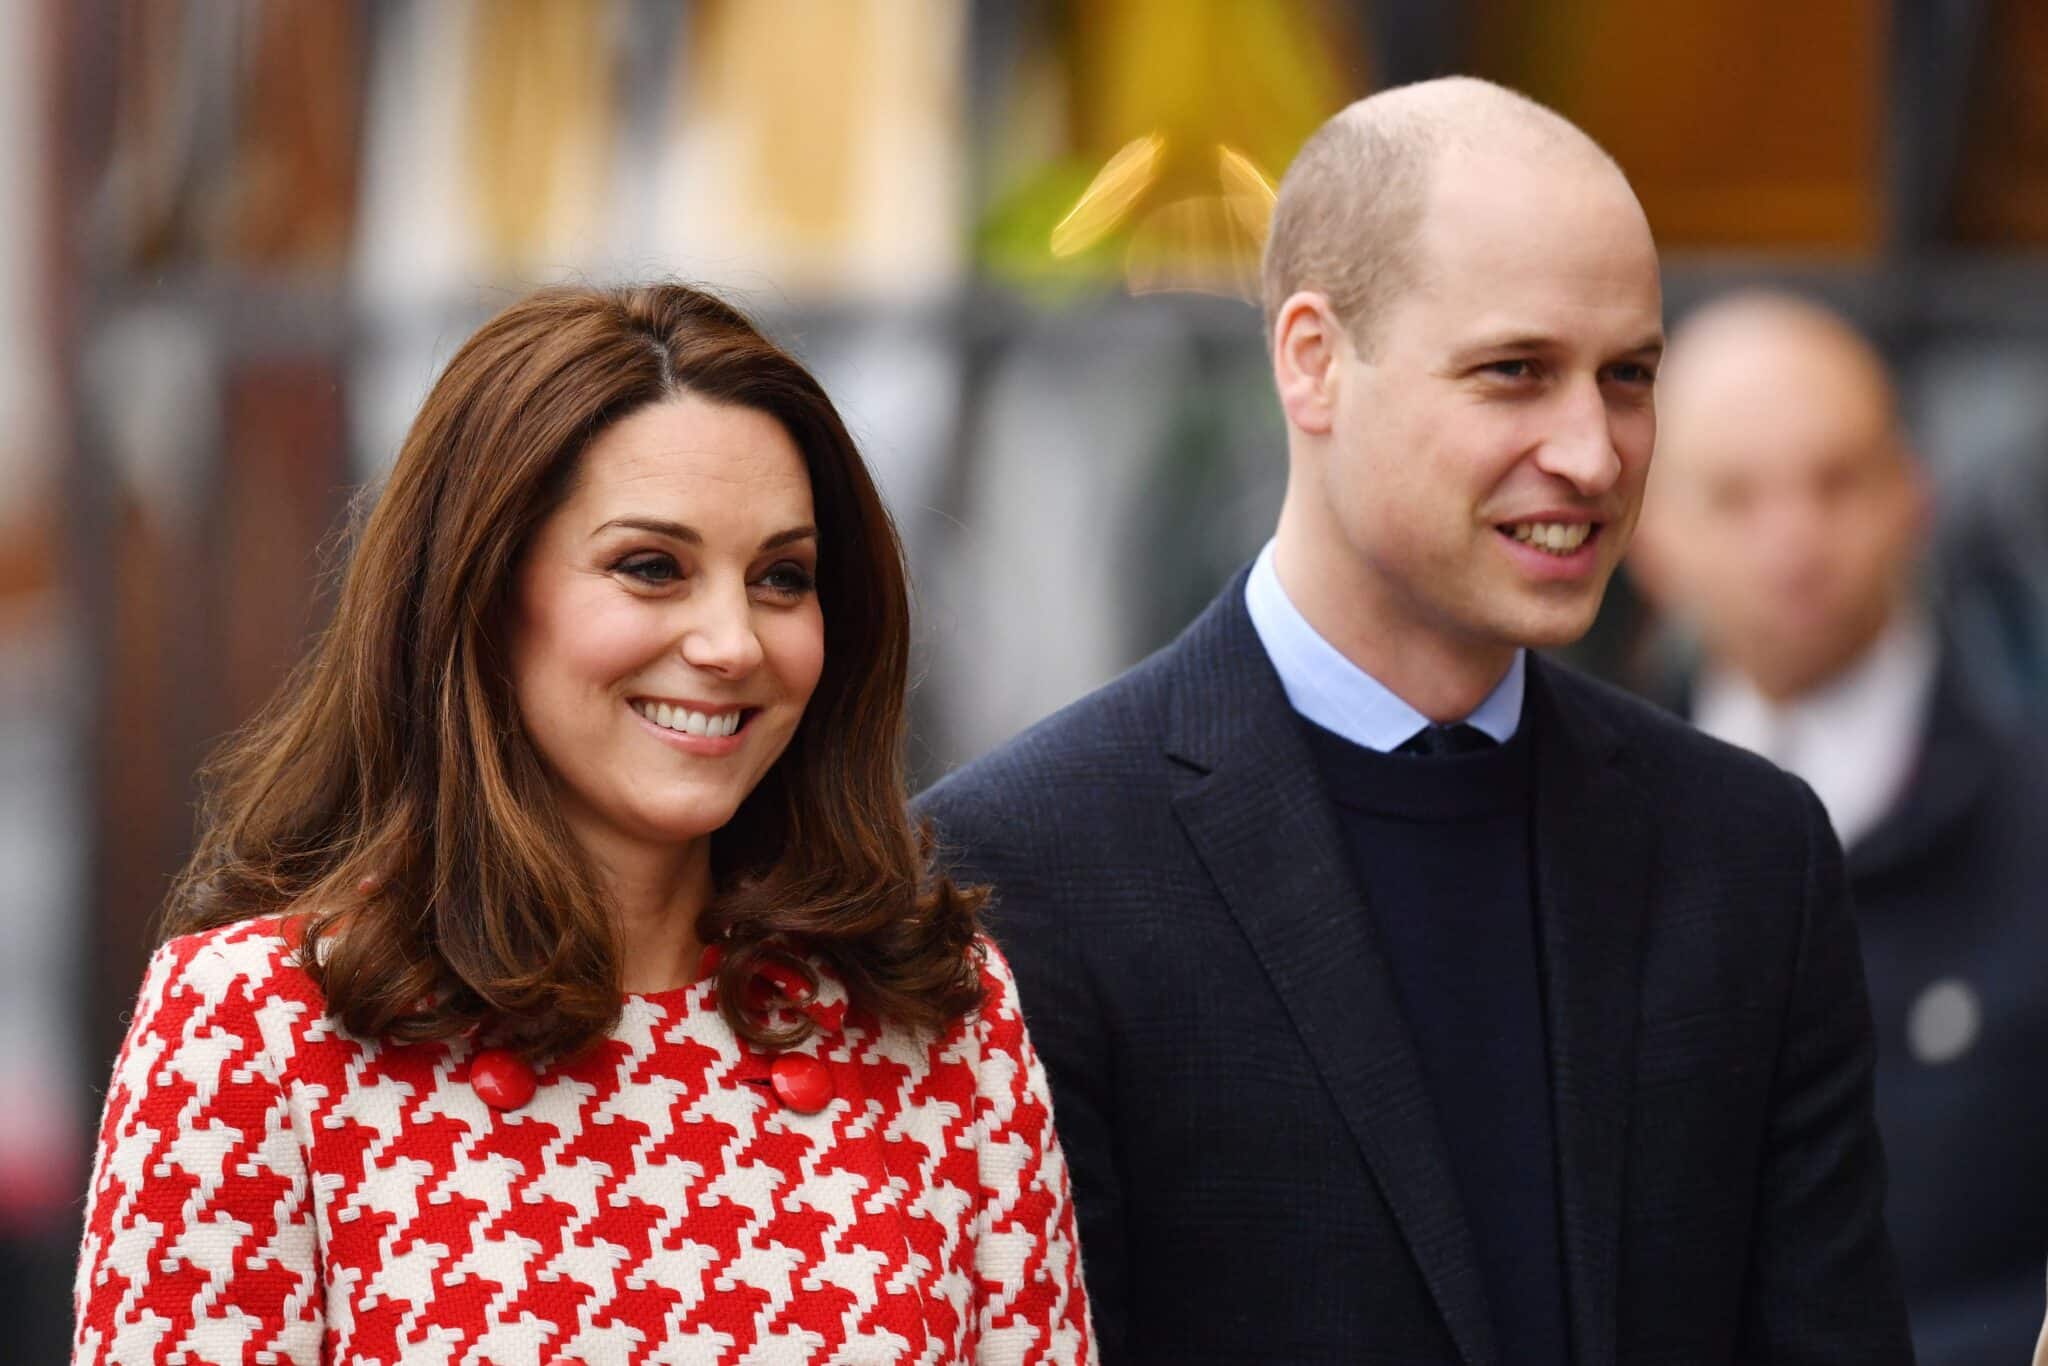 Кейт Миддлтон и принц Уильям: последние новости на сегодня, 7 августа 2019 года